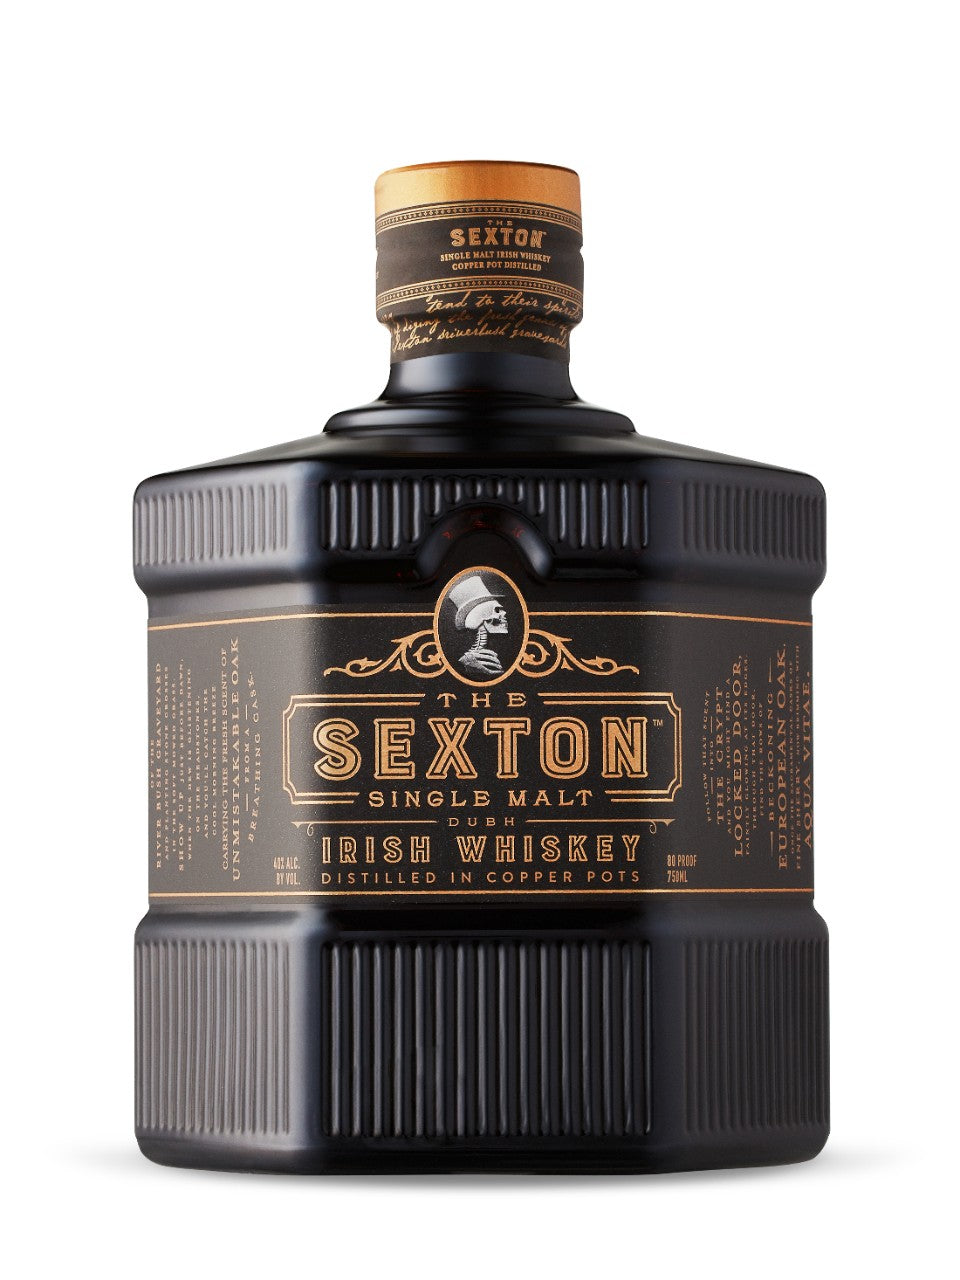 The Sexton Single Malt Irish Whiskey 750 mL bottle